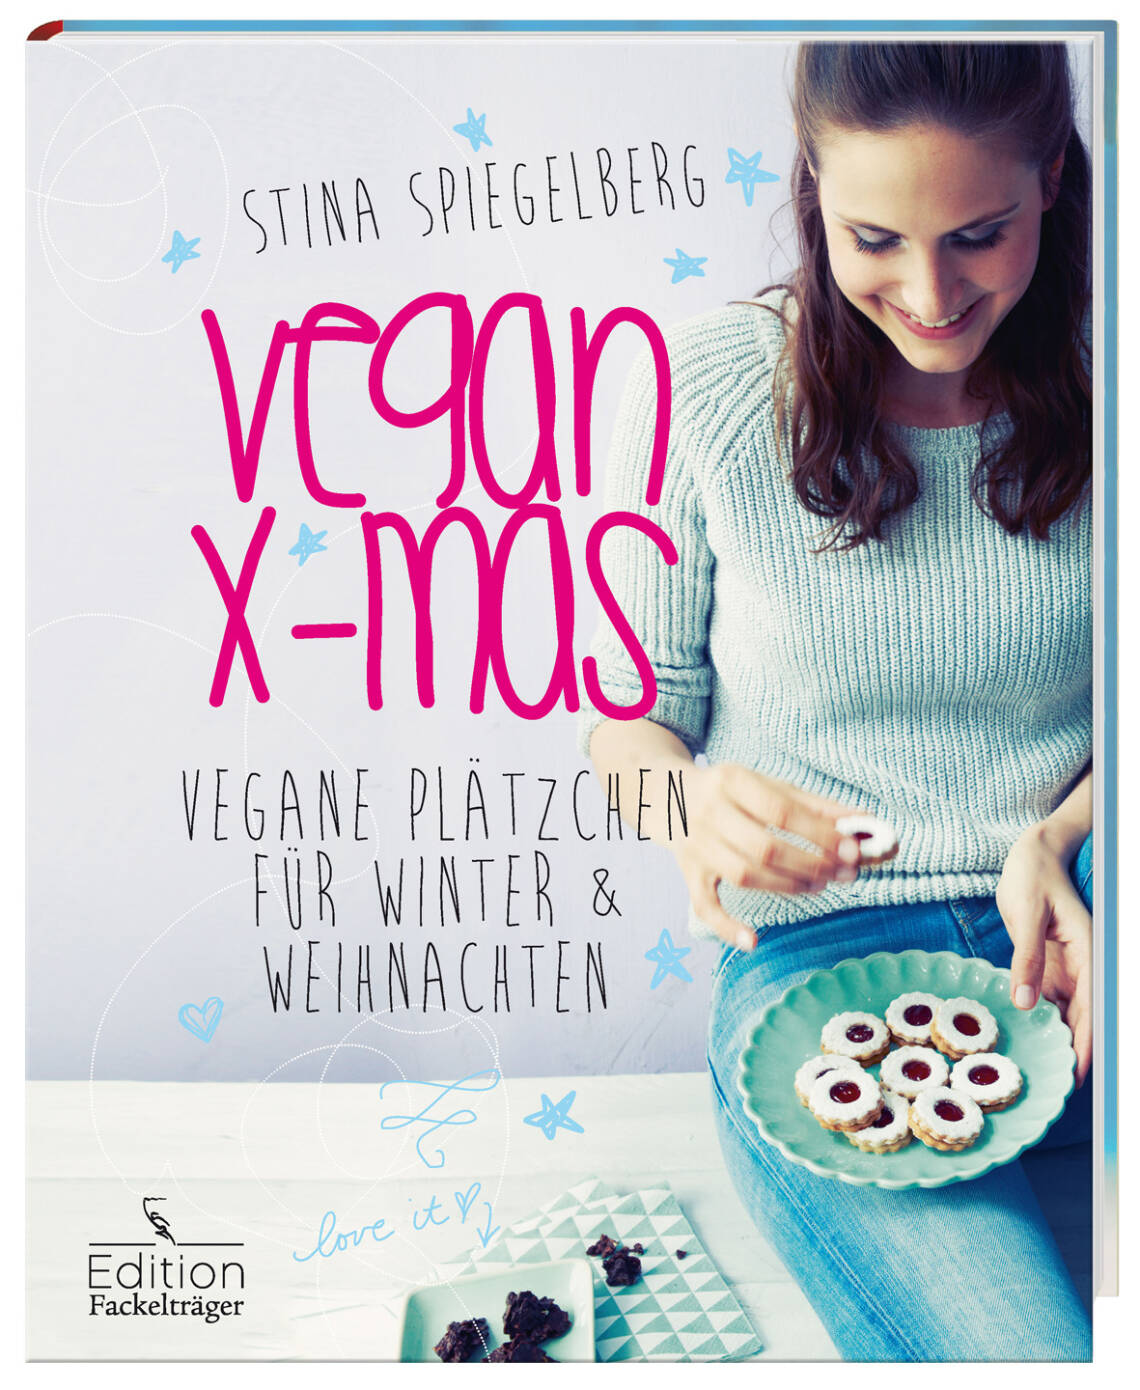 Vegan Xmas – Vegane Plätzchen für Winter & Weihnachten von Stina Spiegelberg